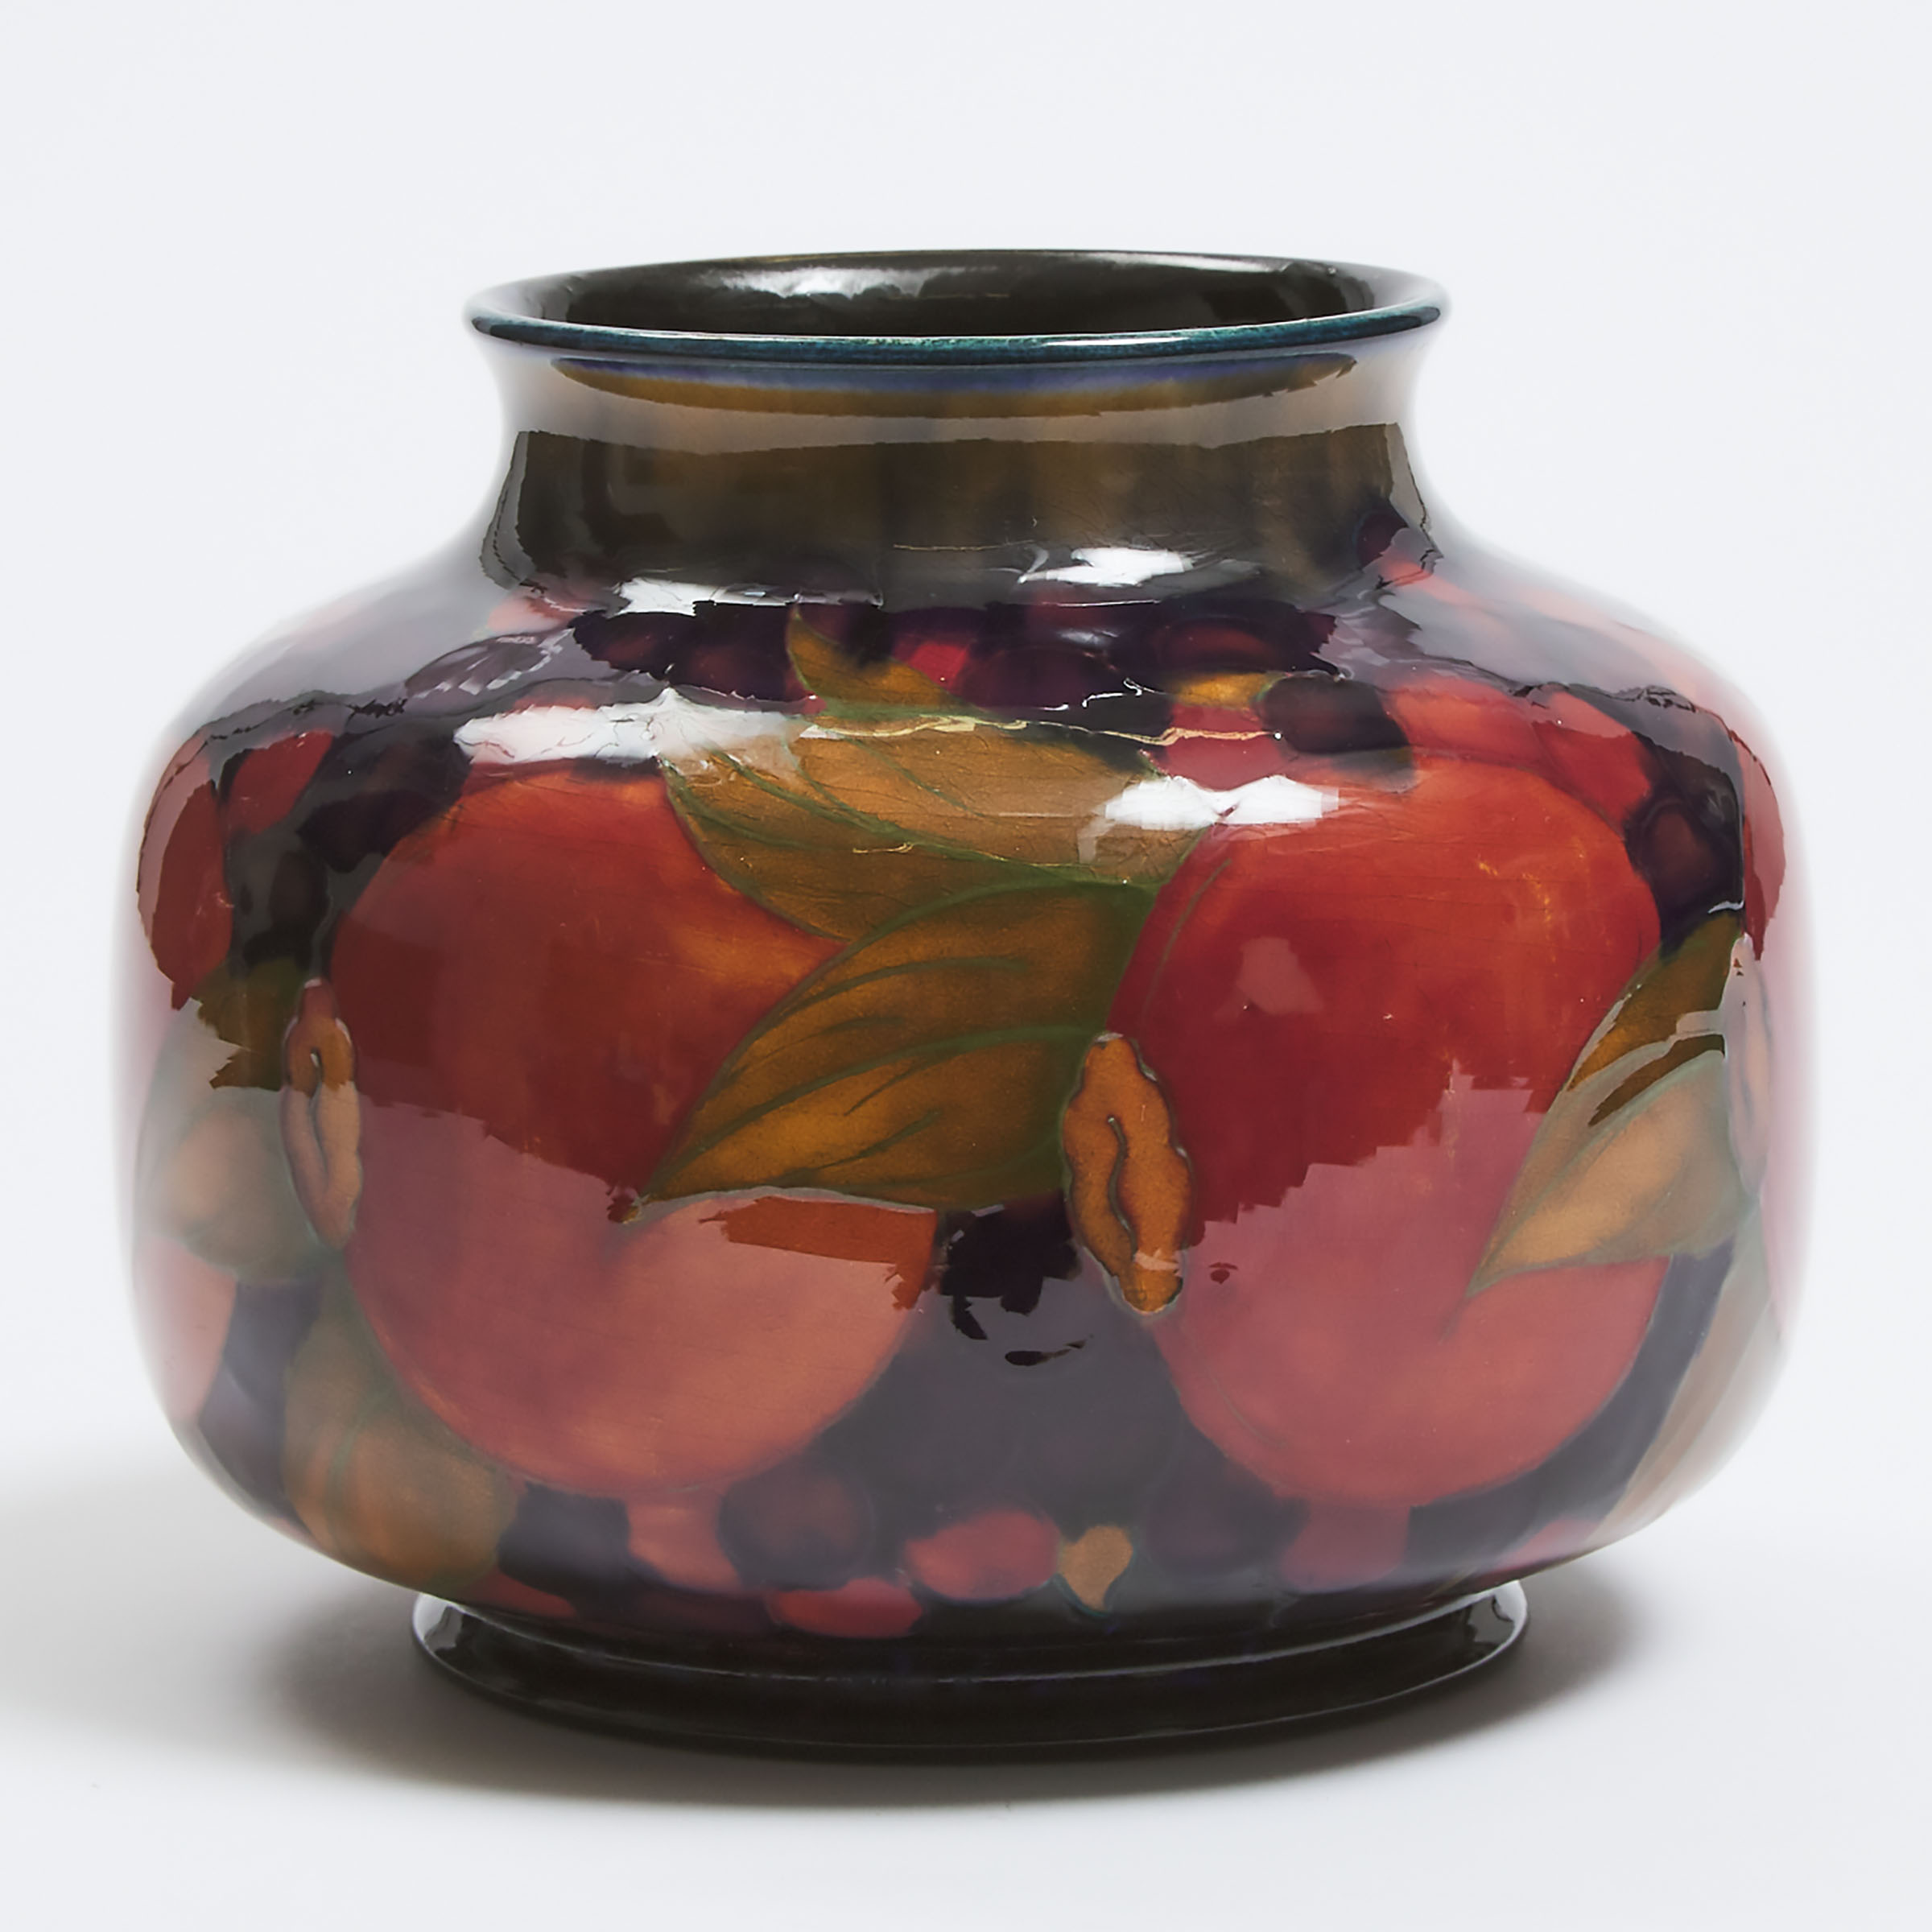 Moorcroft Pomegranate Vase, c.1916-18